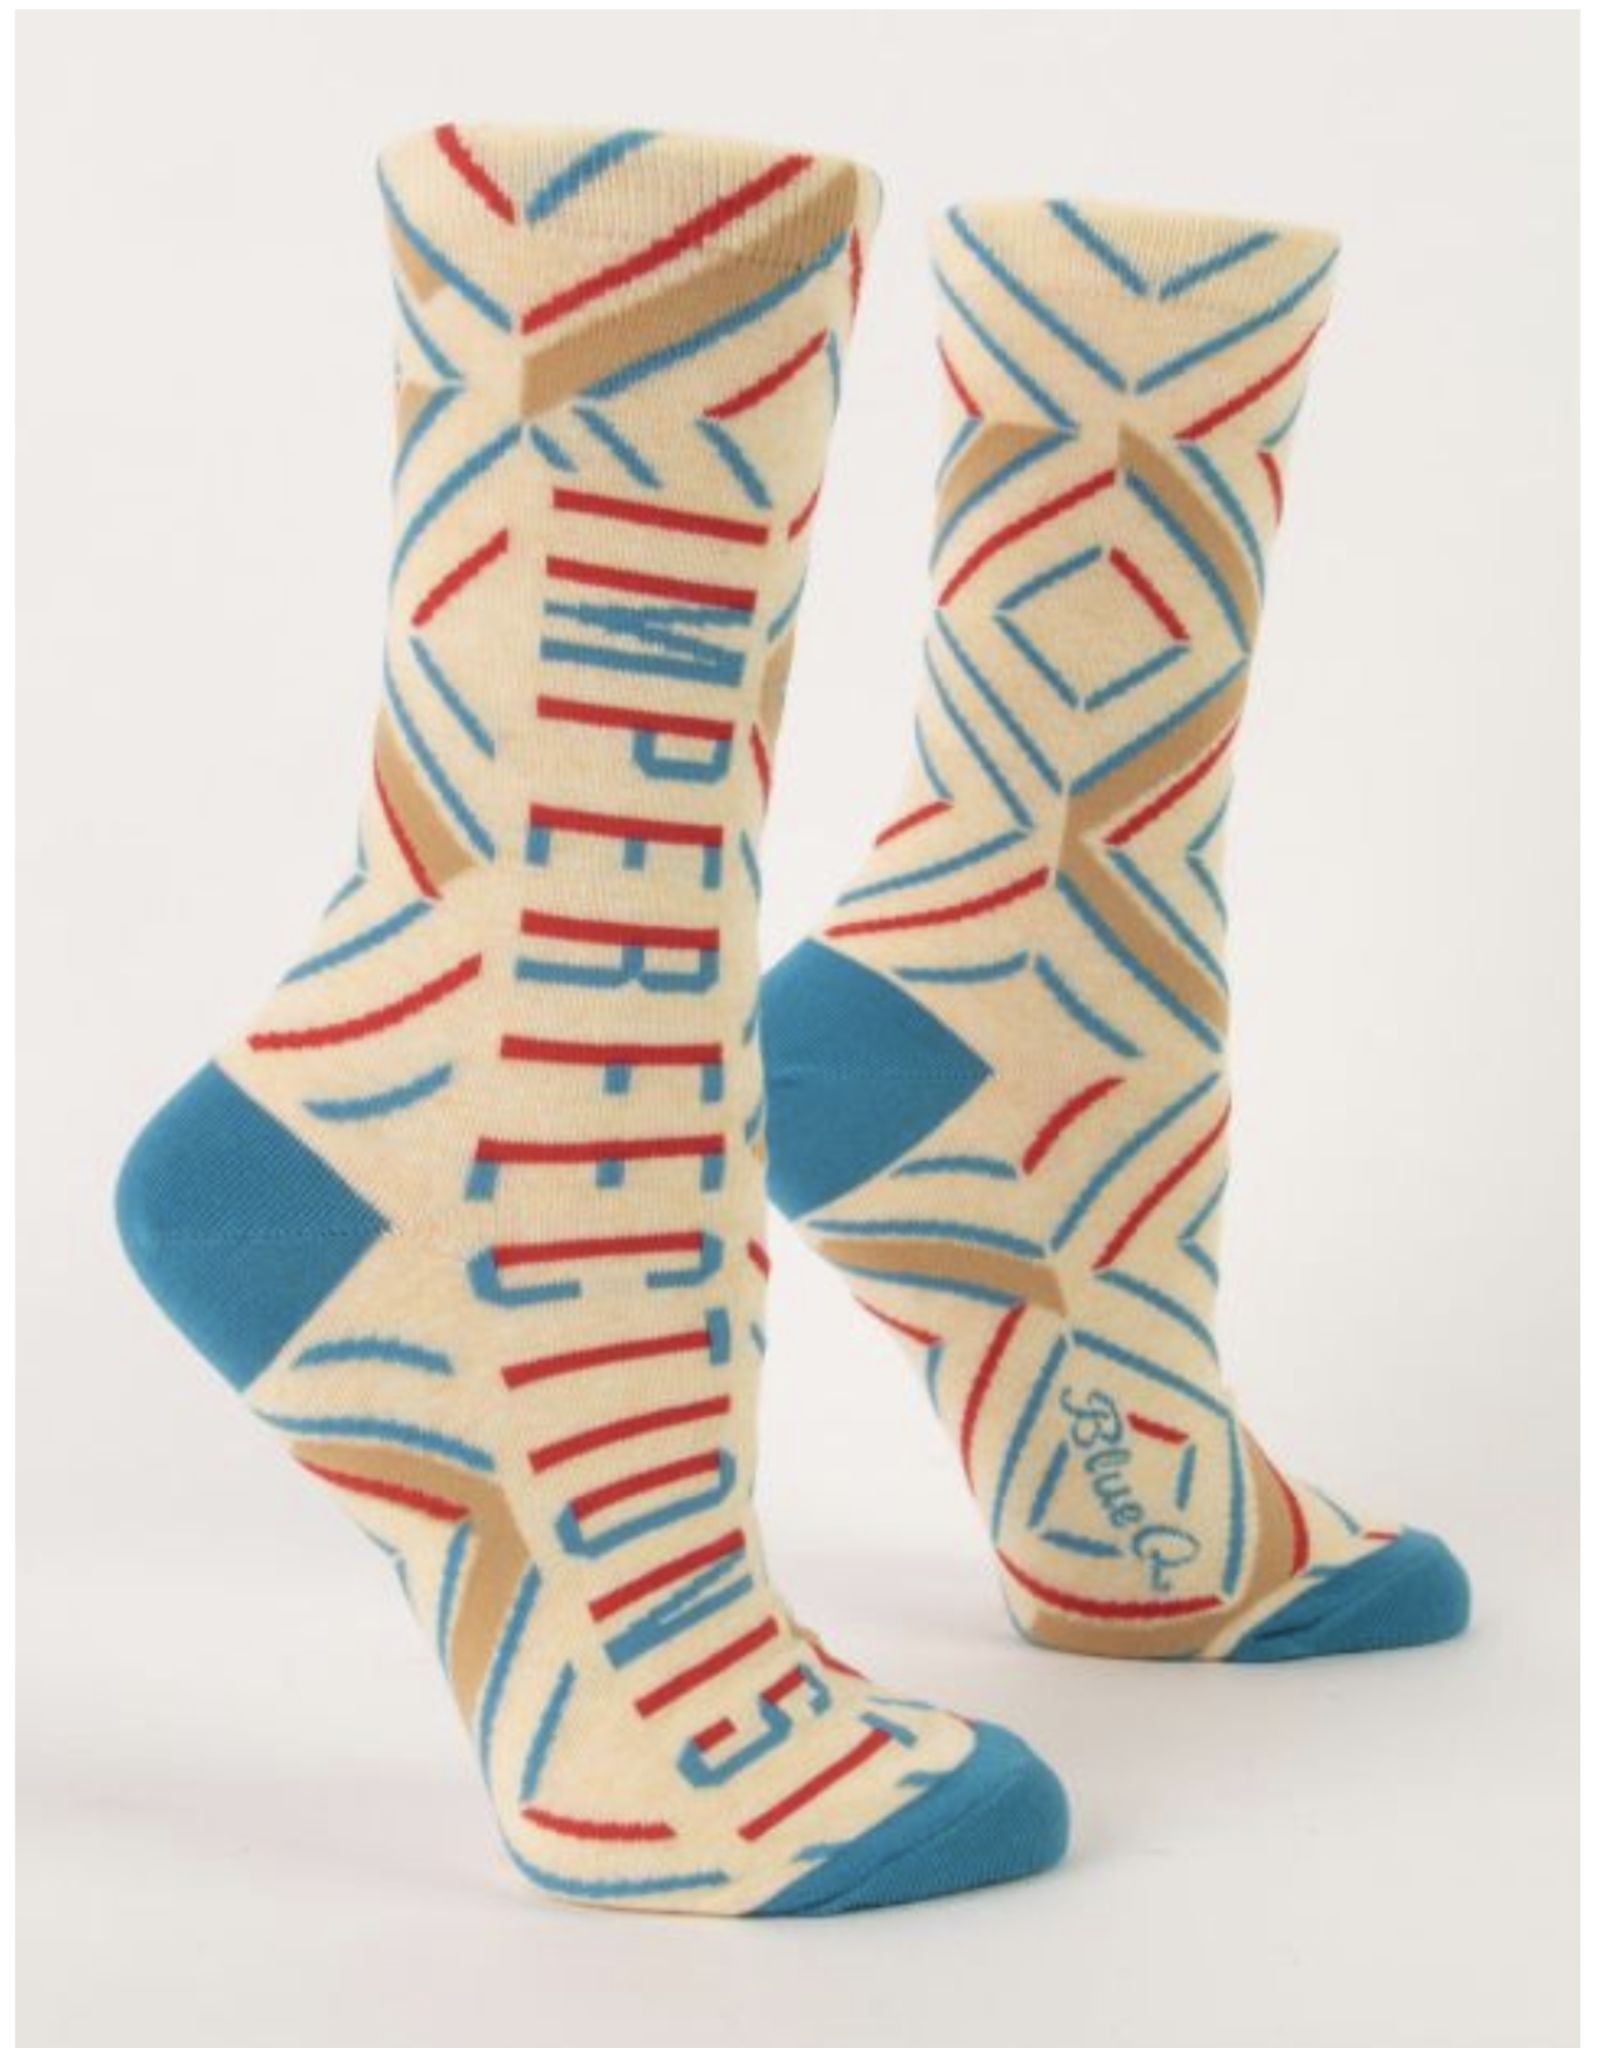 Imperfectionist Women's Crew Socks*